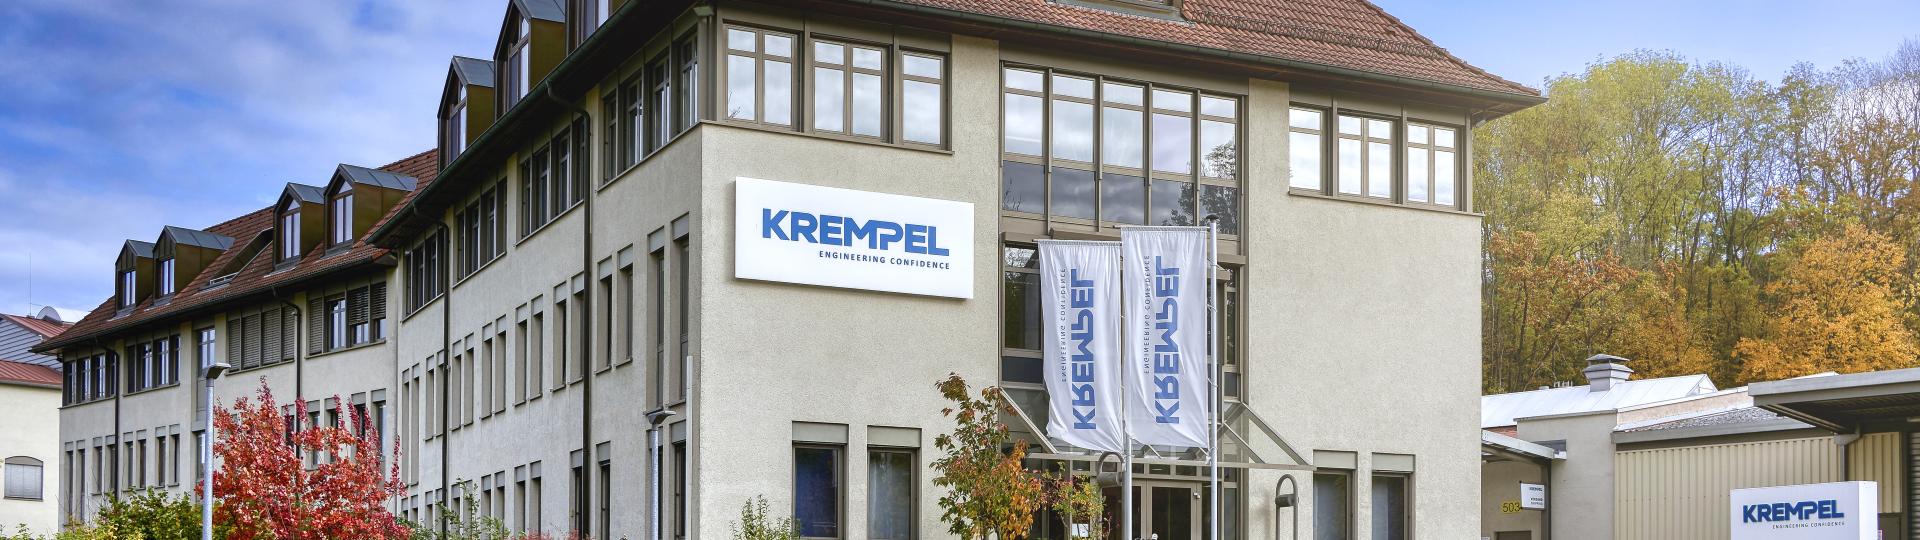 Krempel Hauptverwaltung in Vaihingen Enzweihingen.